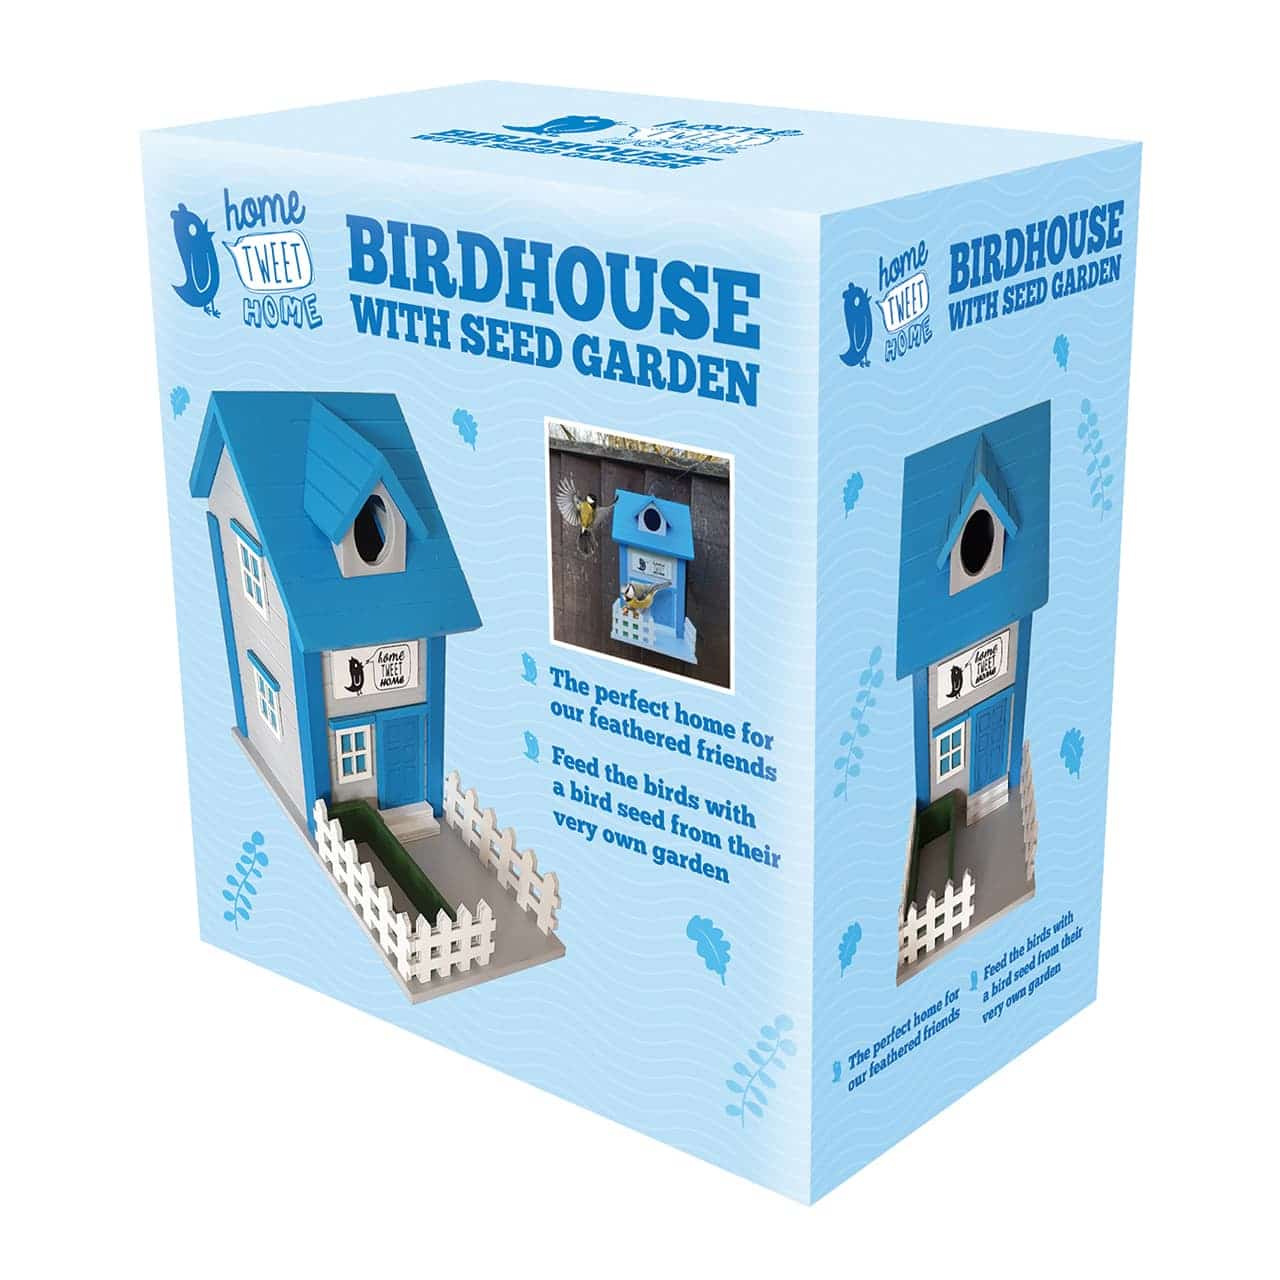 Hoe Tweet Home Bird Box / Feeder